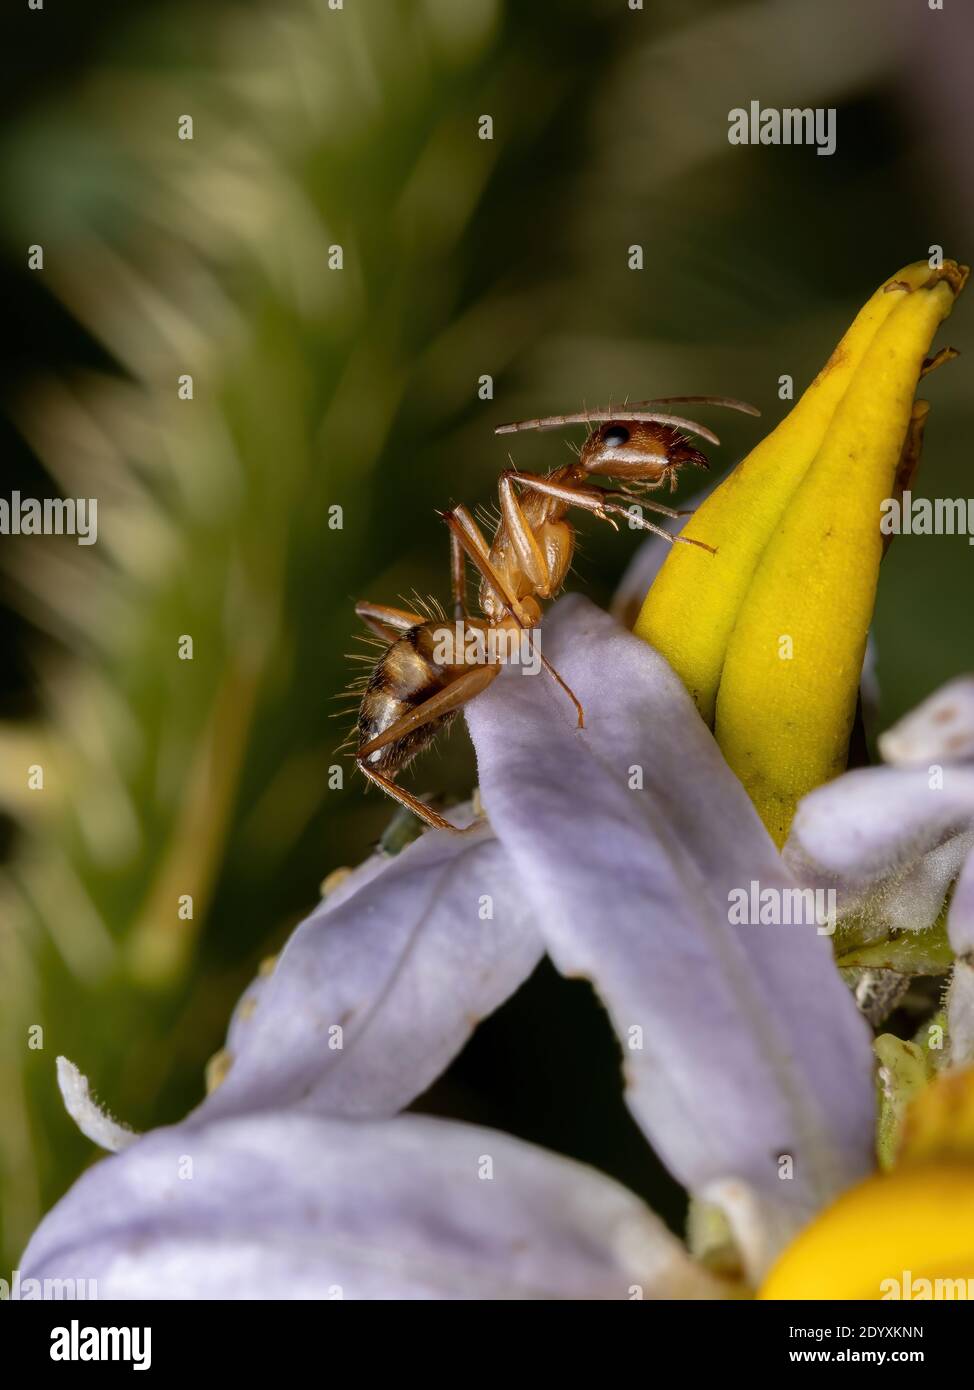 Adult Female Carpenter Ant of the species Camponotus substitutus Stock Photo